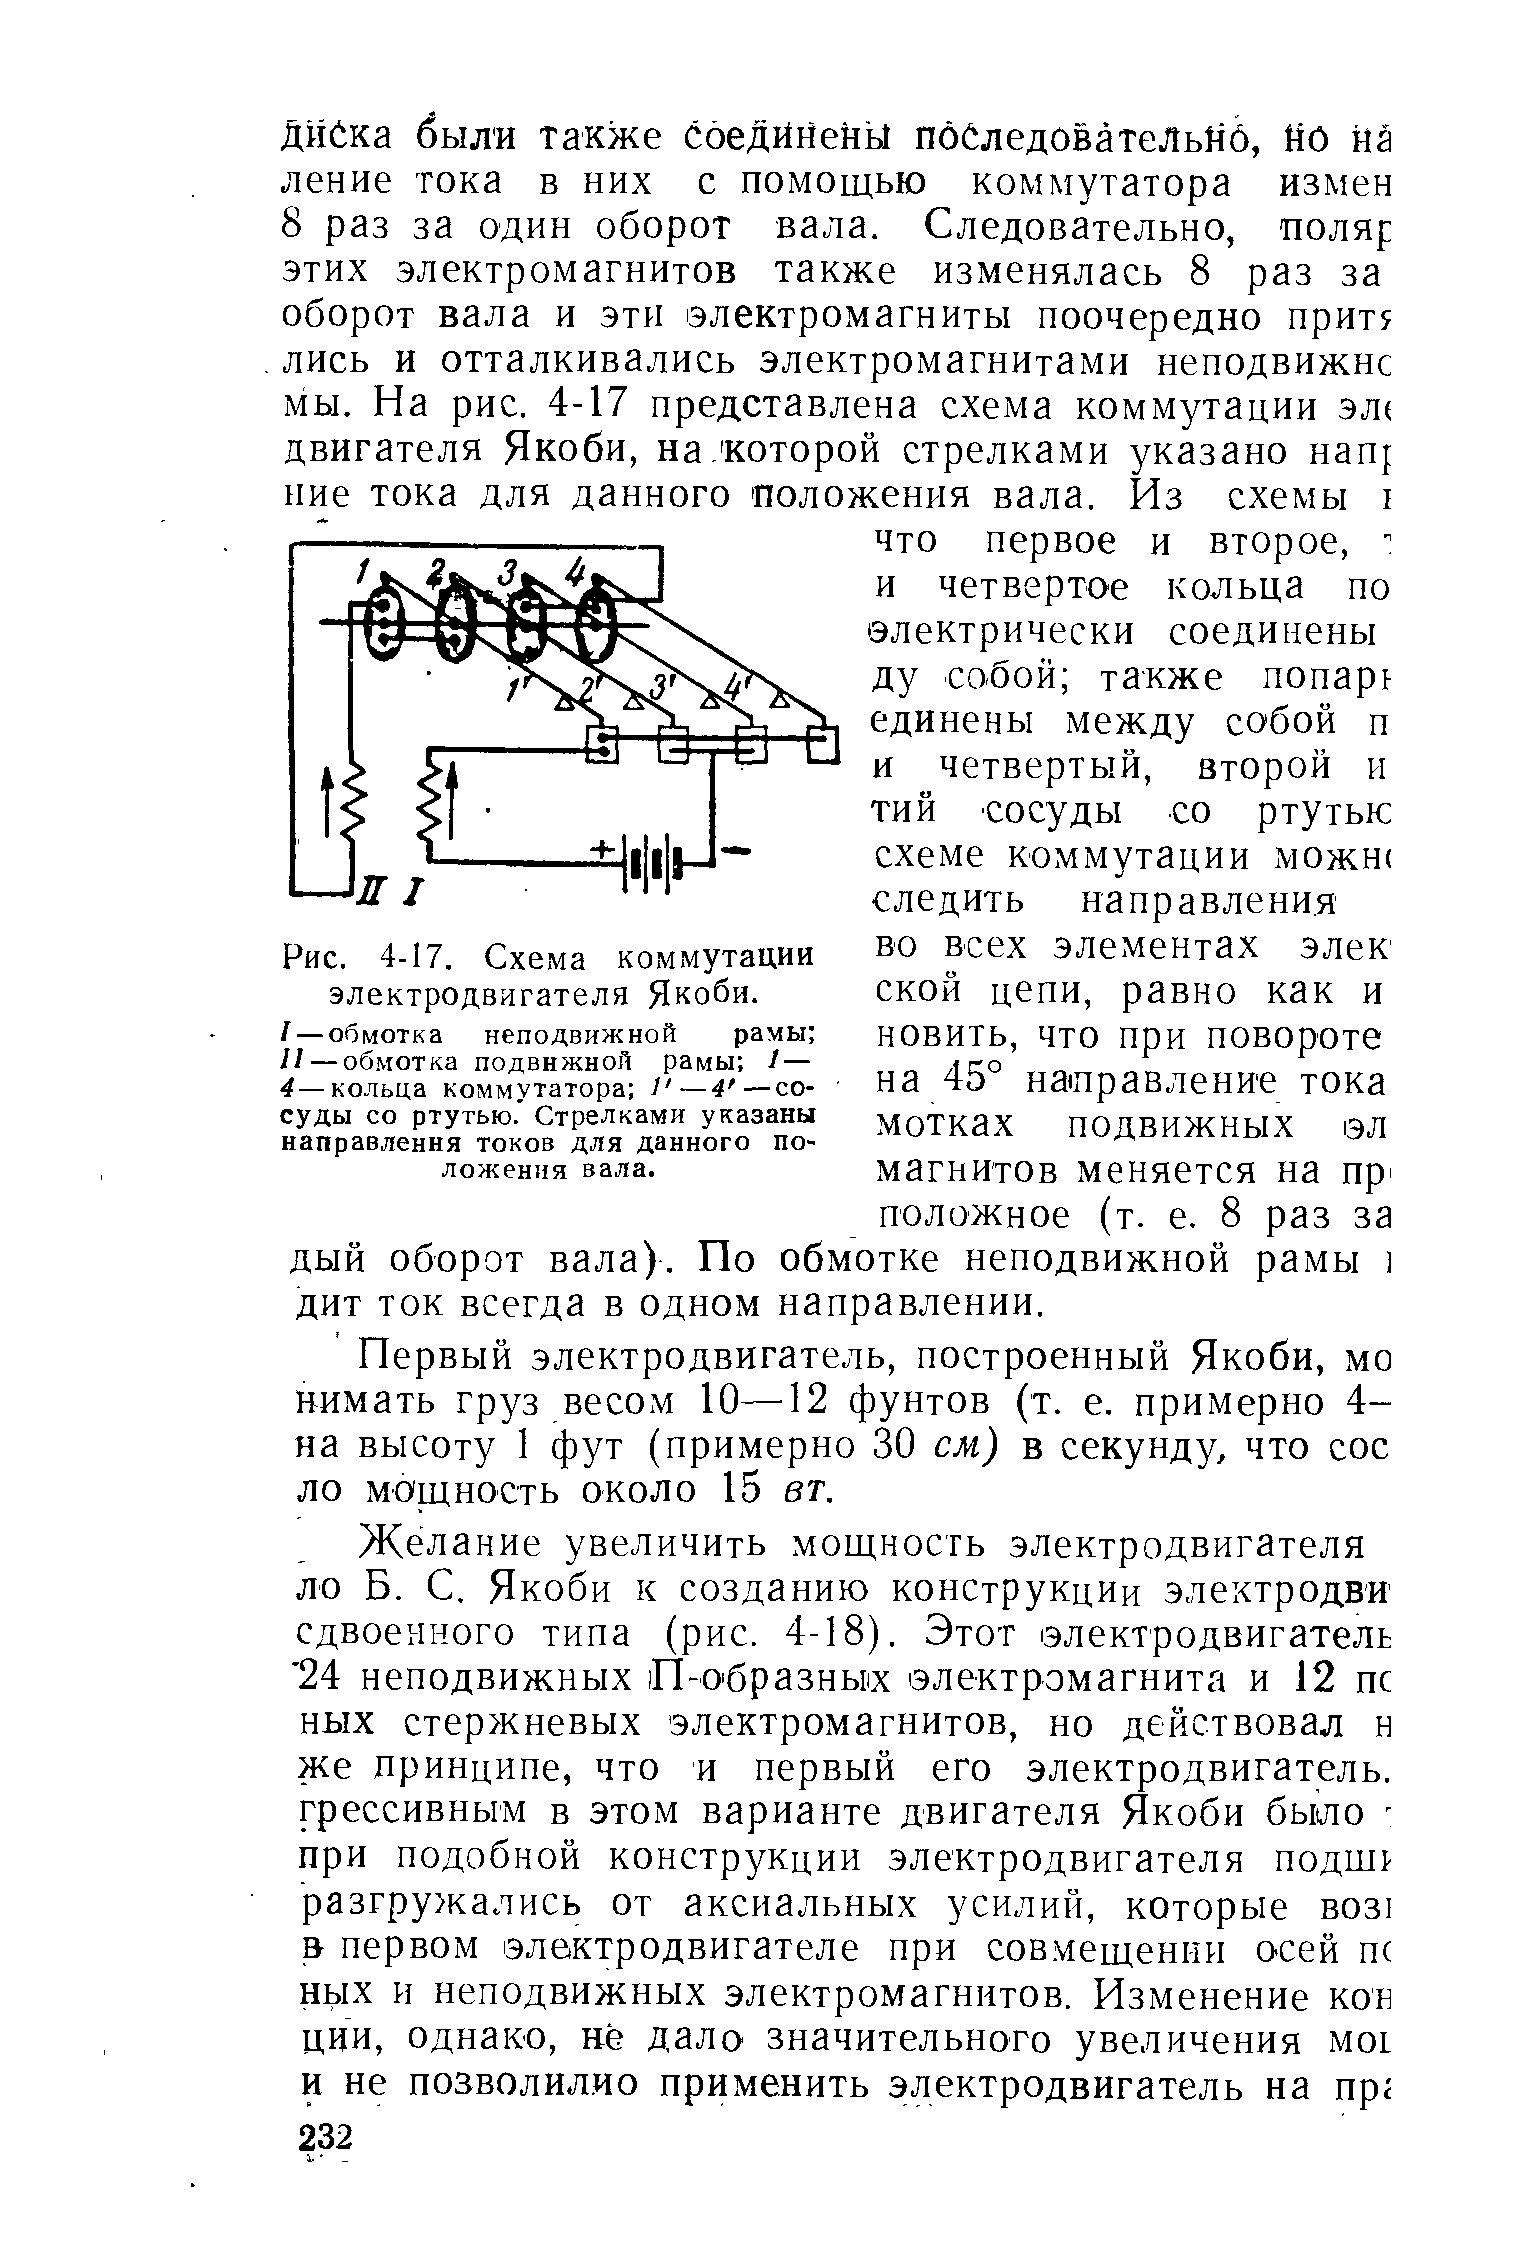 Рис. 4-17. Схема коммутации электродвигателя Якоби.
